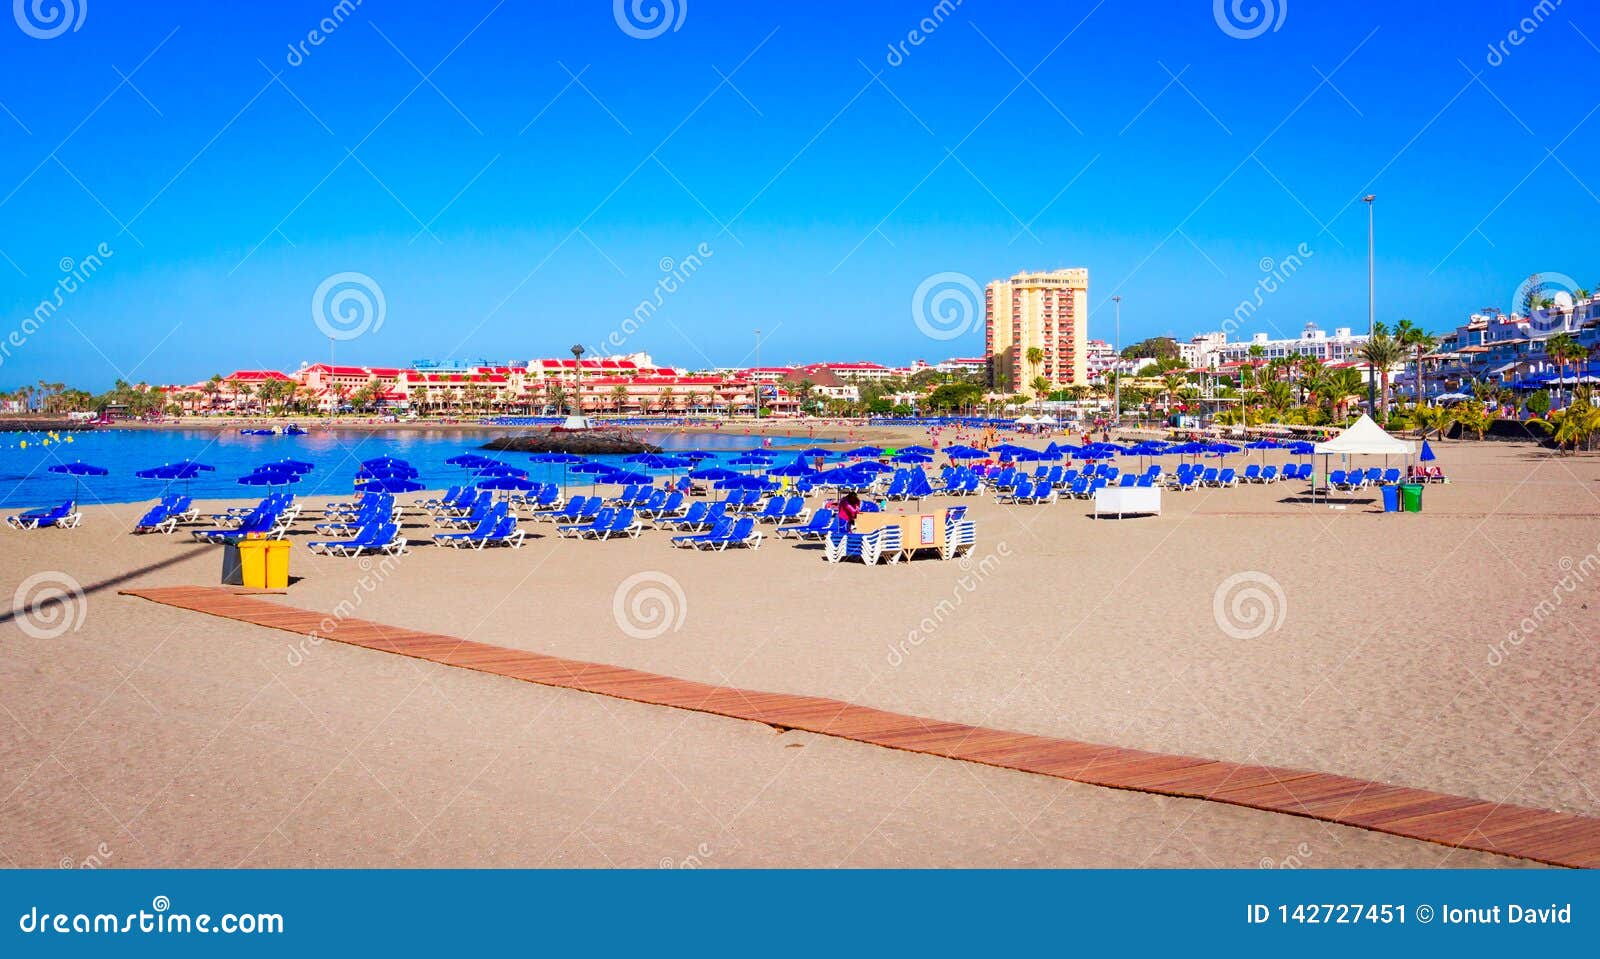 playa de las vistas, tenerife, spain: beautiful beach in los cristianos